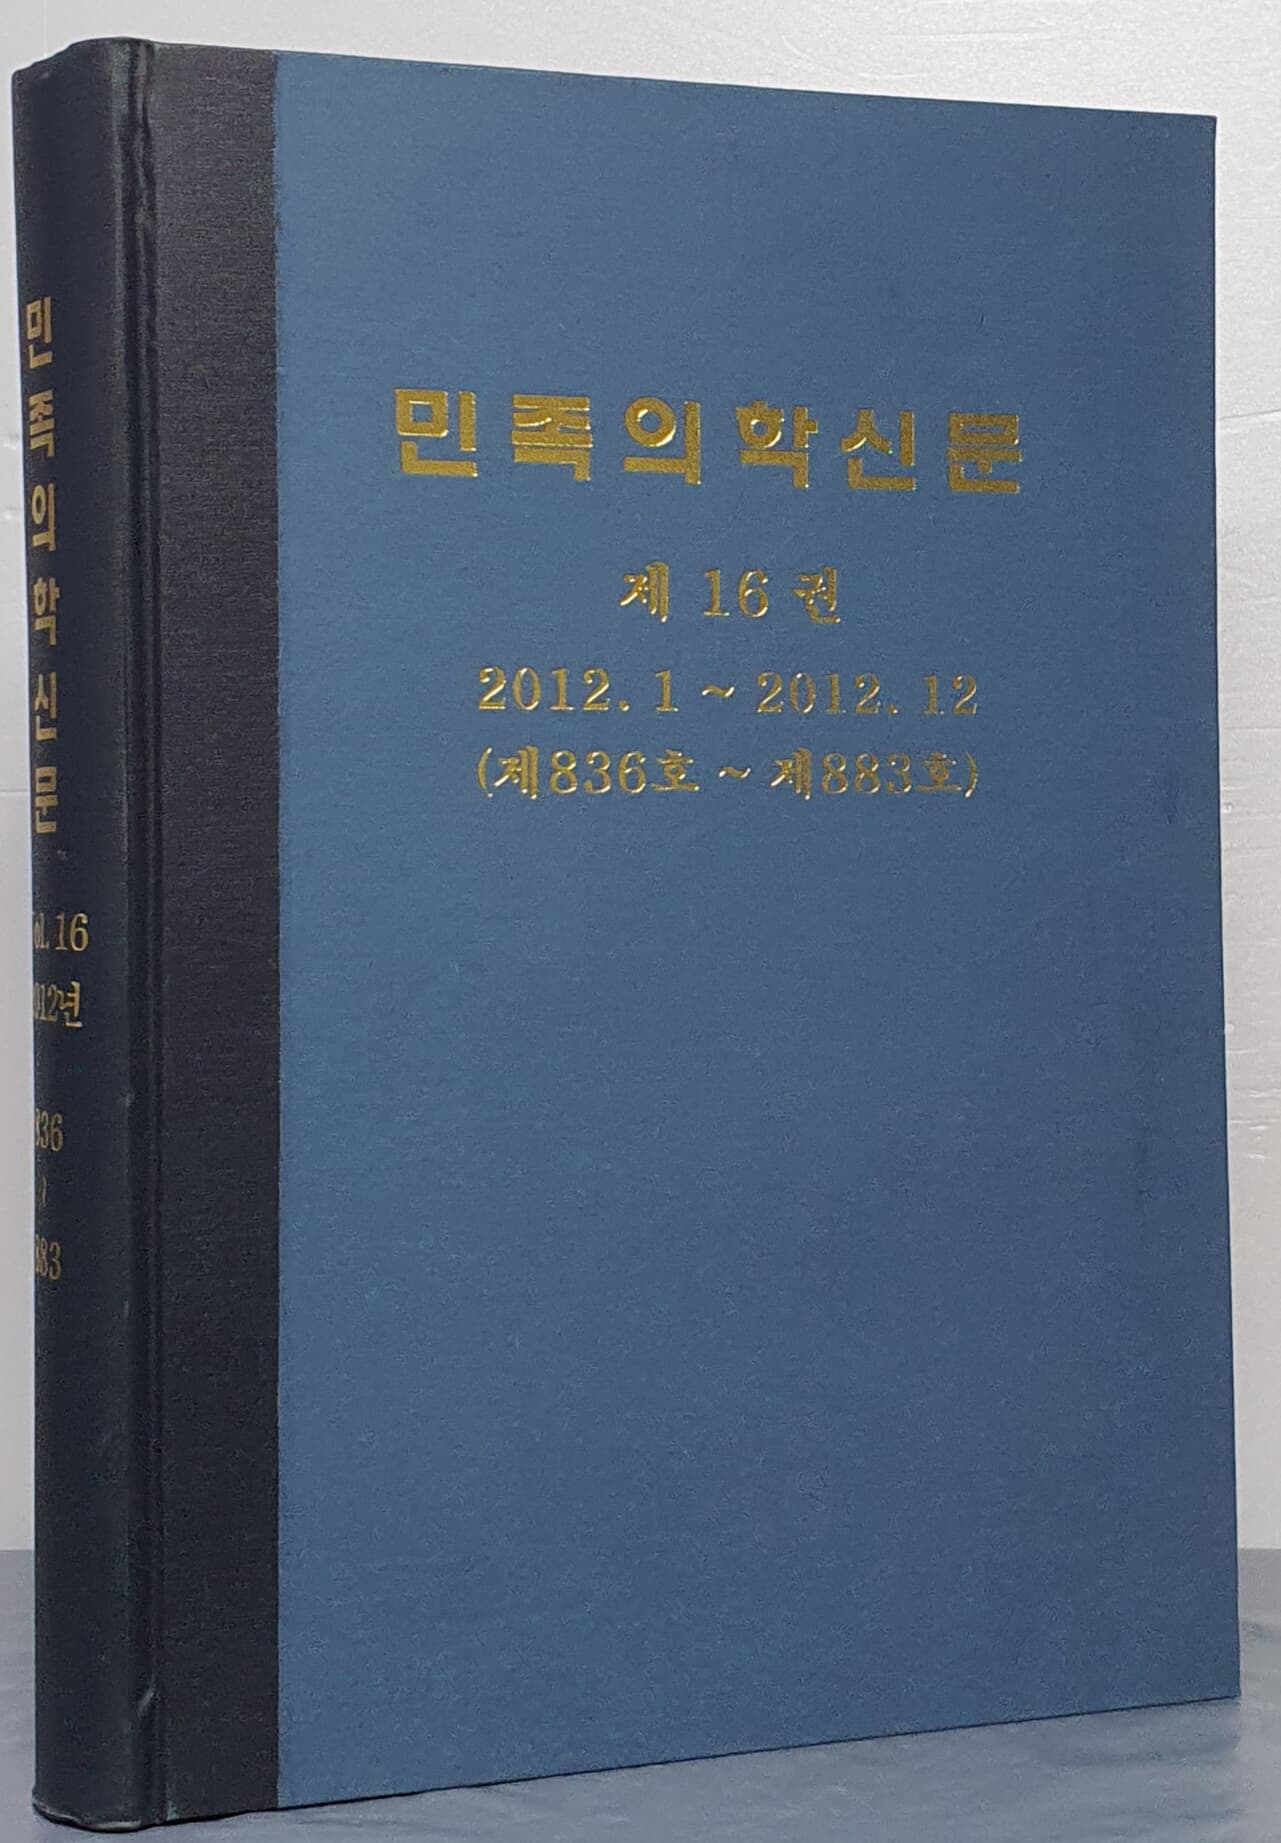 민족의학신문 제16권 2012.1~2012.12 (제836호~제883호)